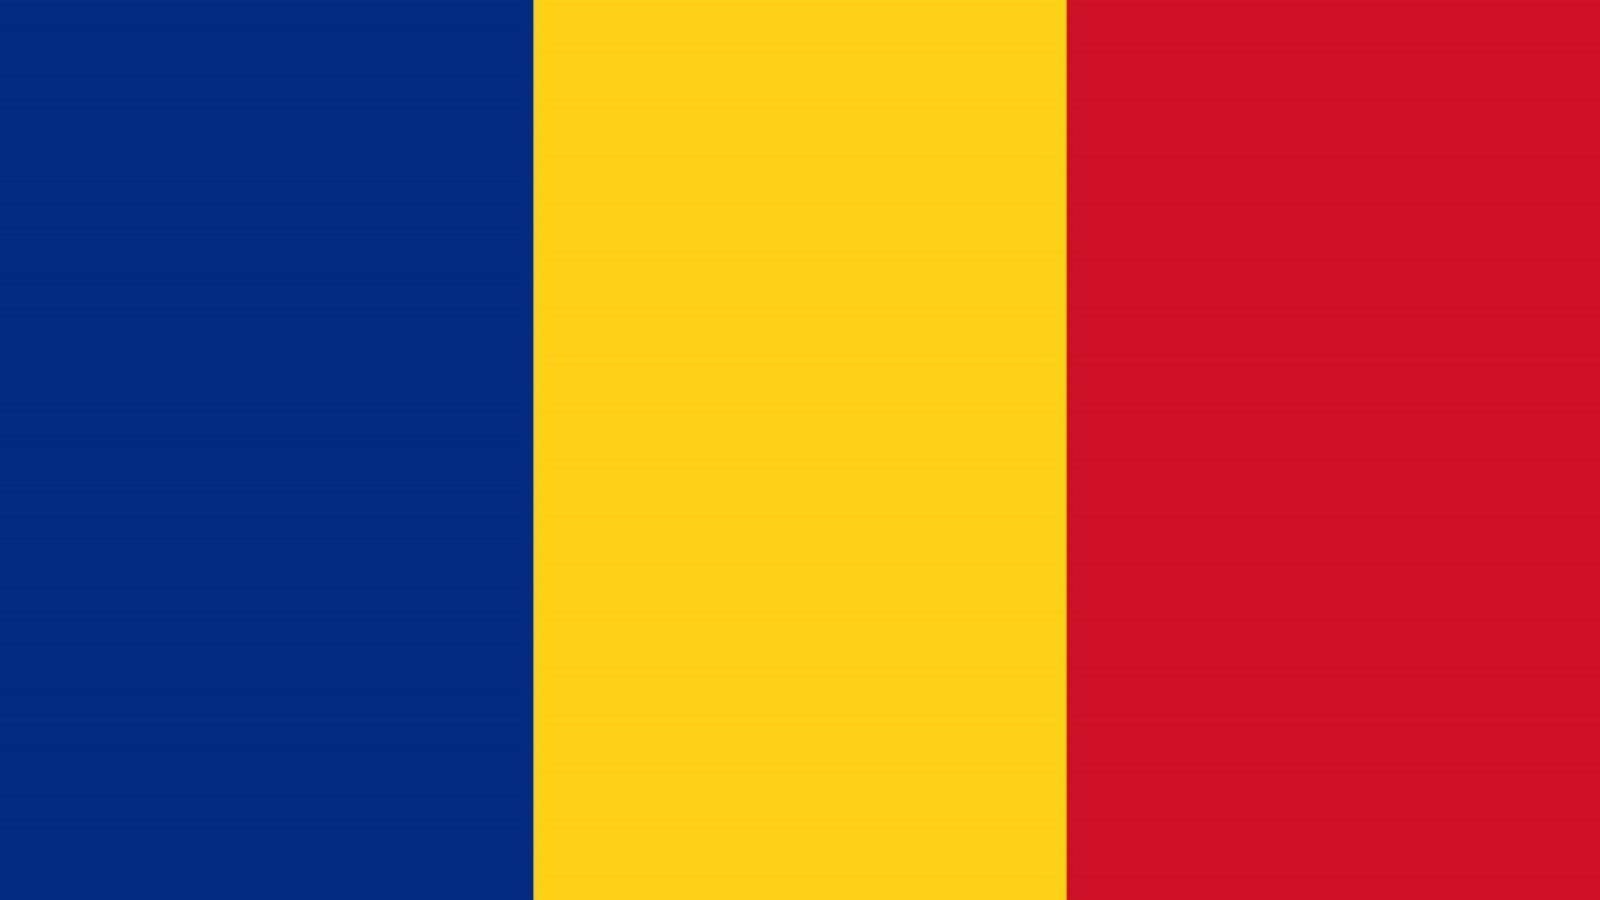 Den rumænske regering nægter at forpligte rumænerne